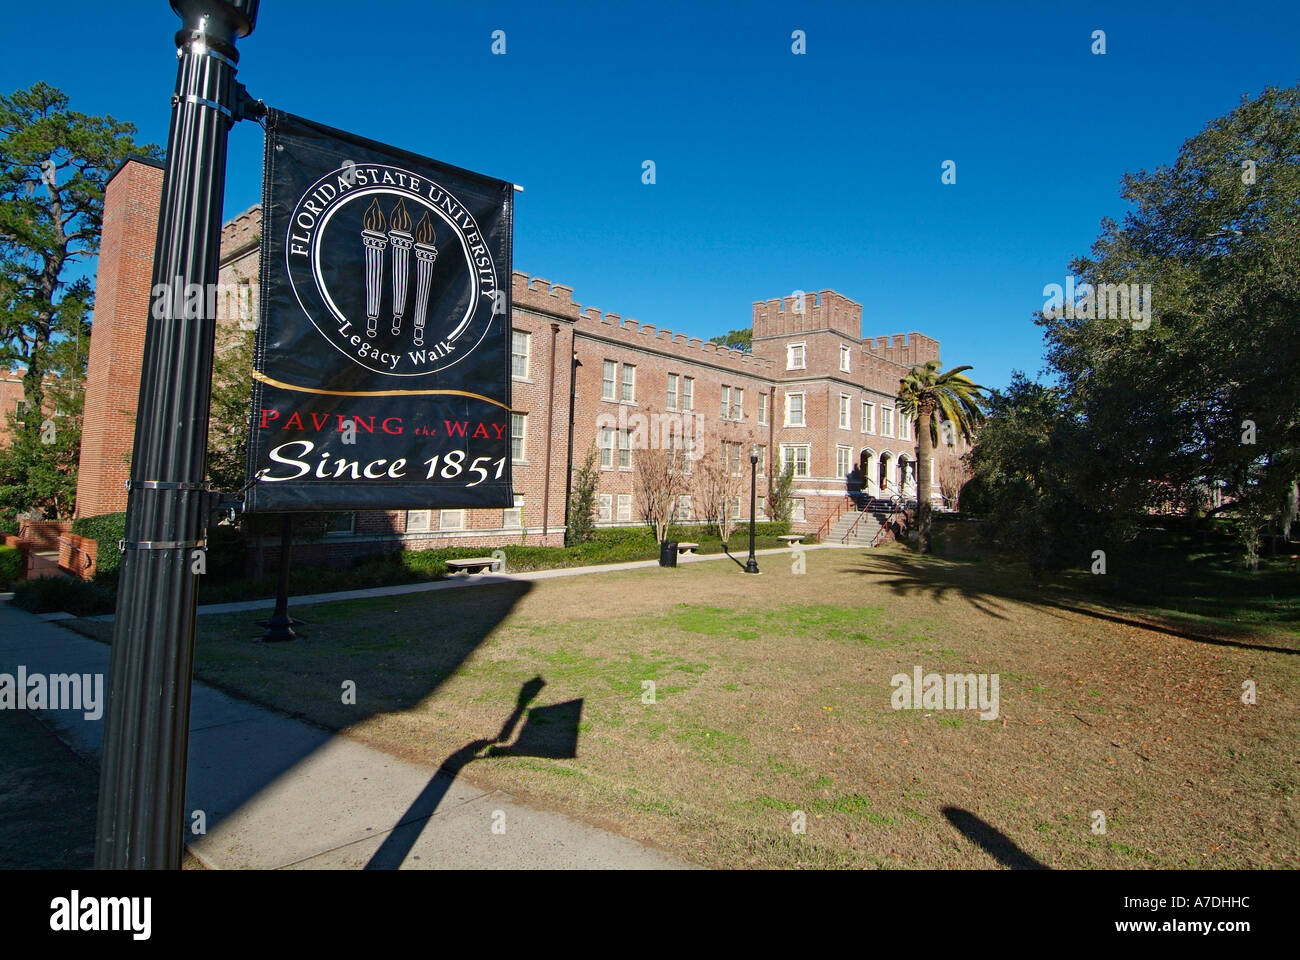 Bryan Hall, le campus de l'Université d'État de Floride Floride Tallahassee FL Seminoles Banque D'Images